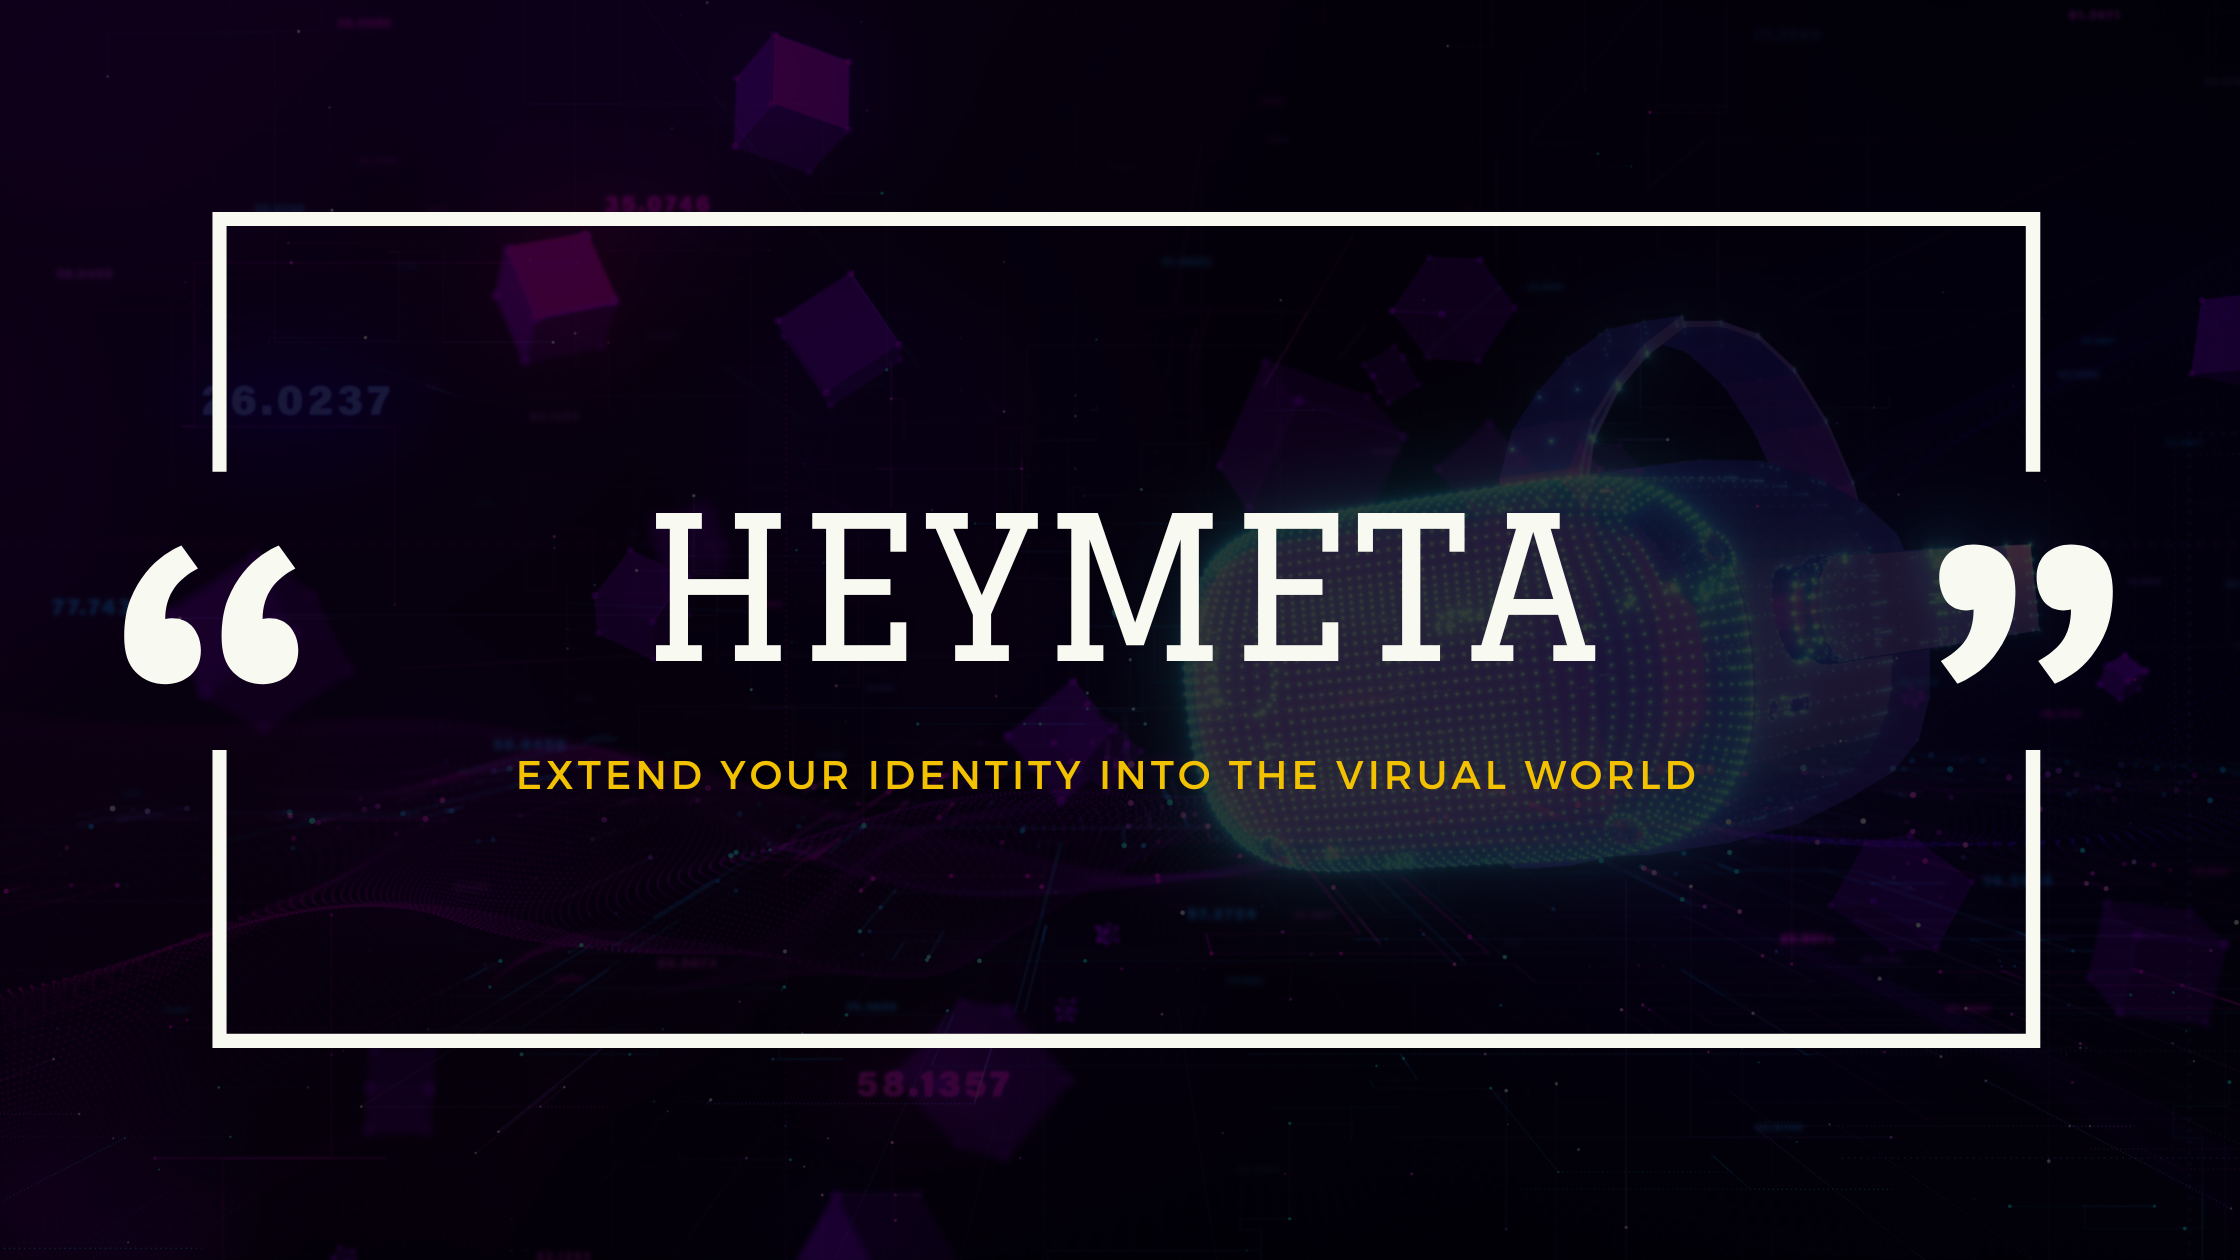 What's Heymeta?